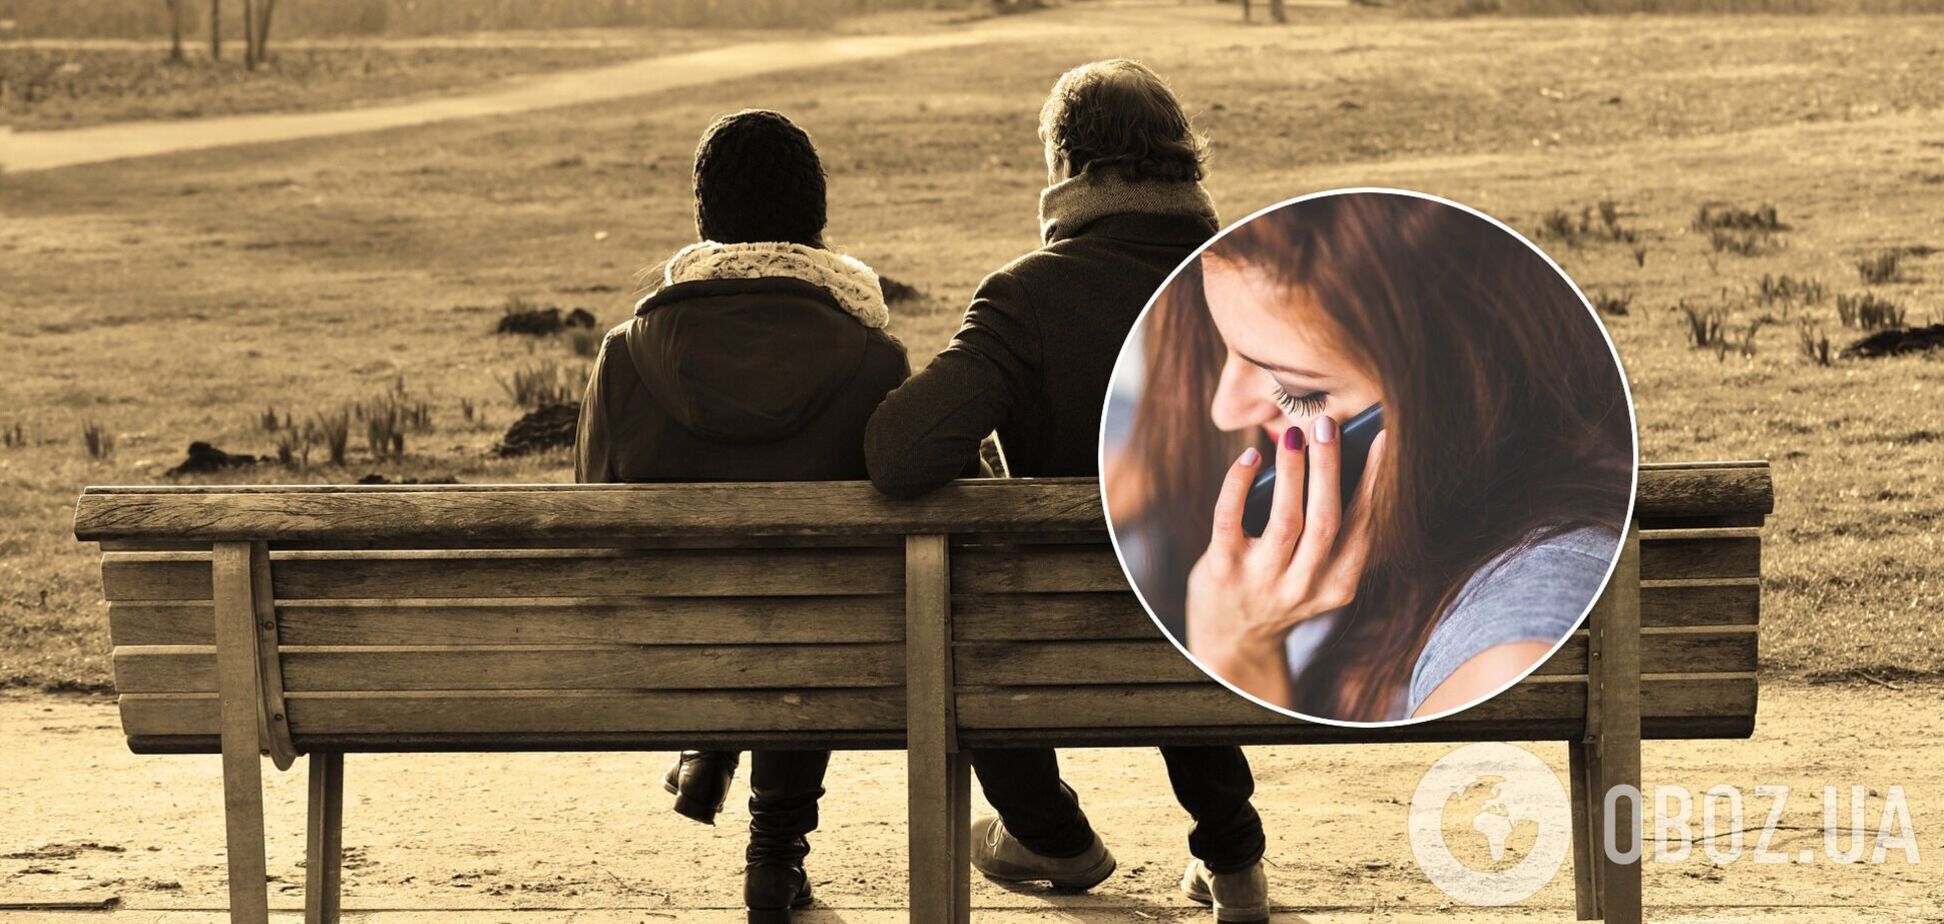 Психолог дал совет, что спросить у своего парня или девушки о прошлых отношениях